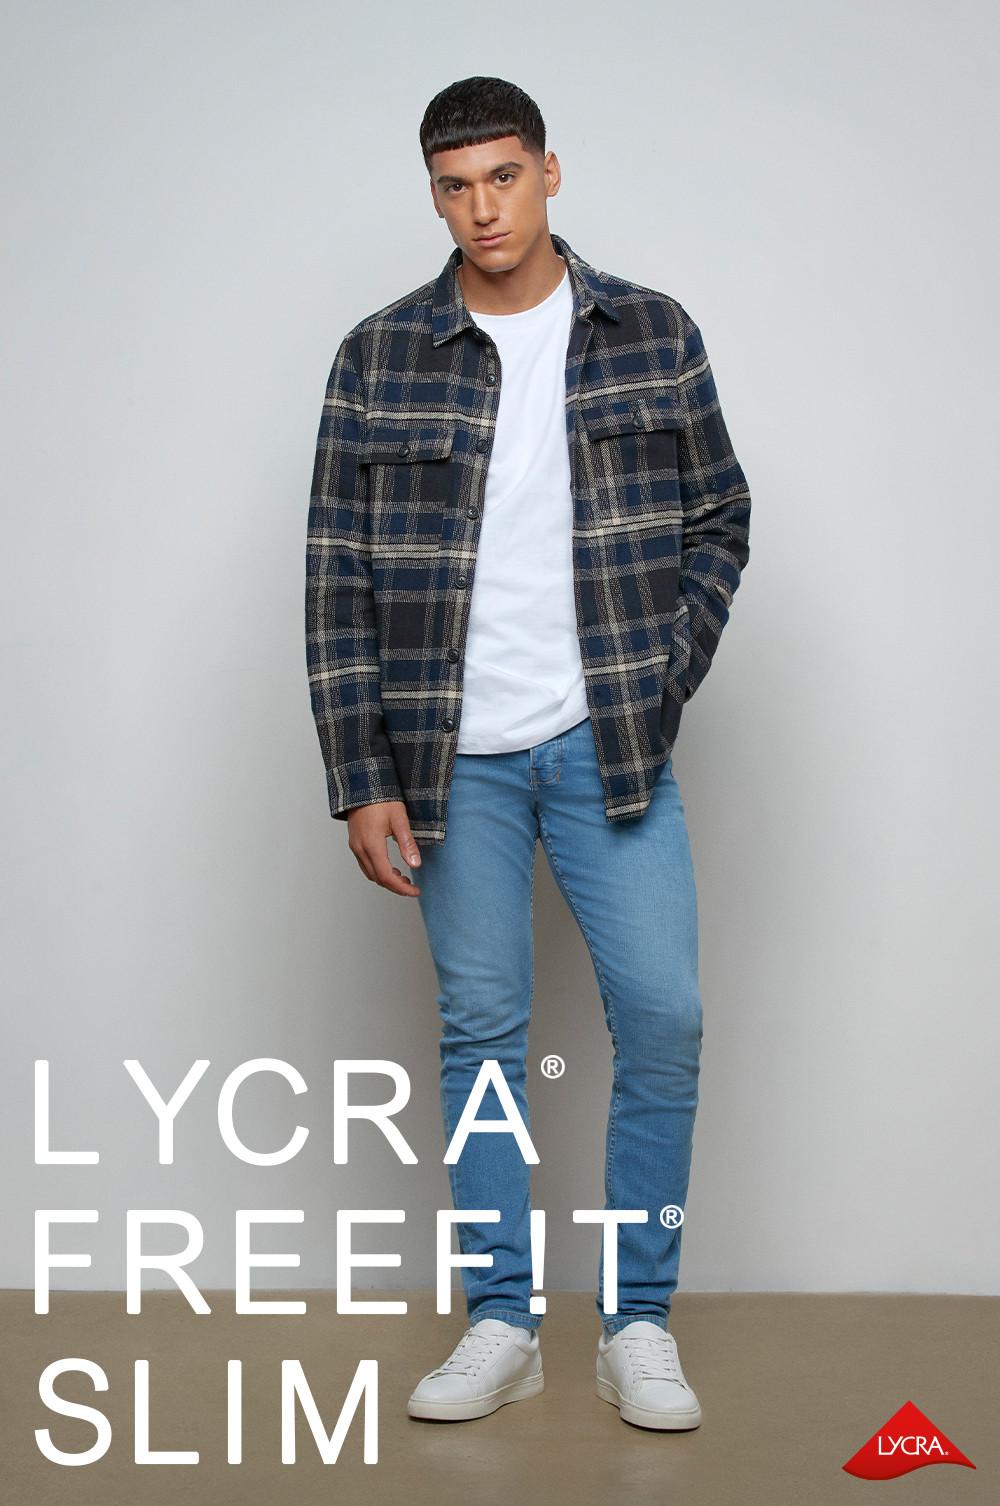 Lycra FreeFit Slim